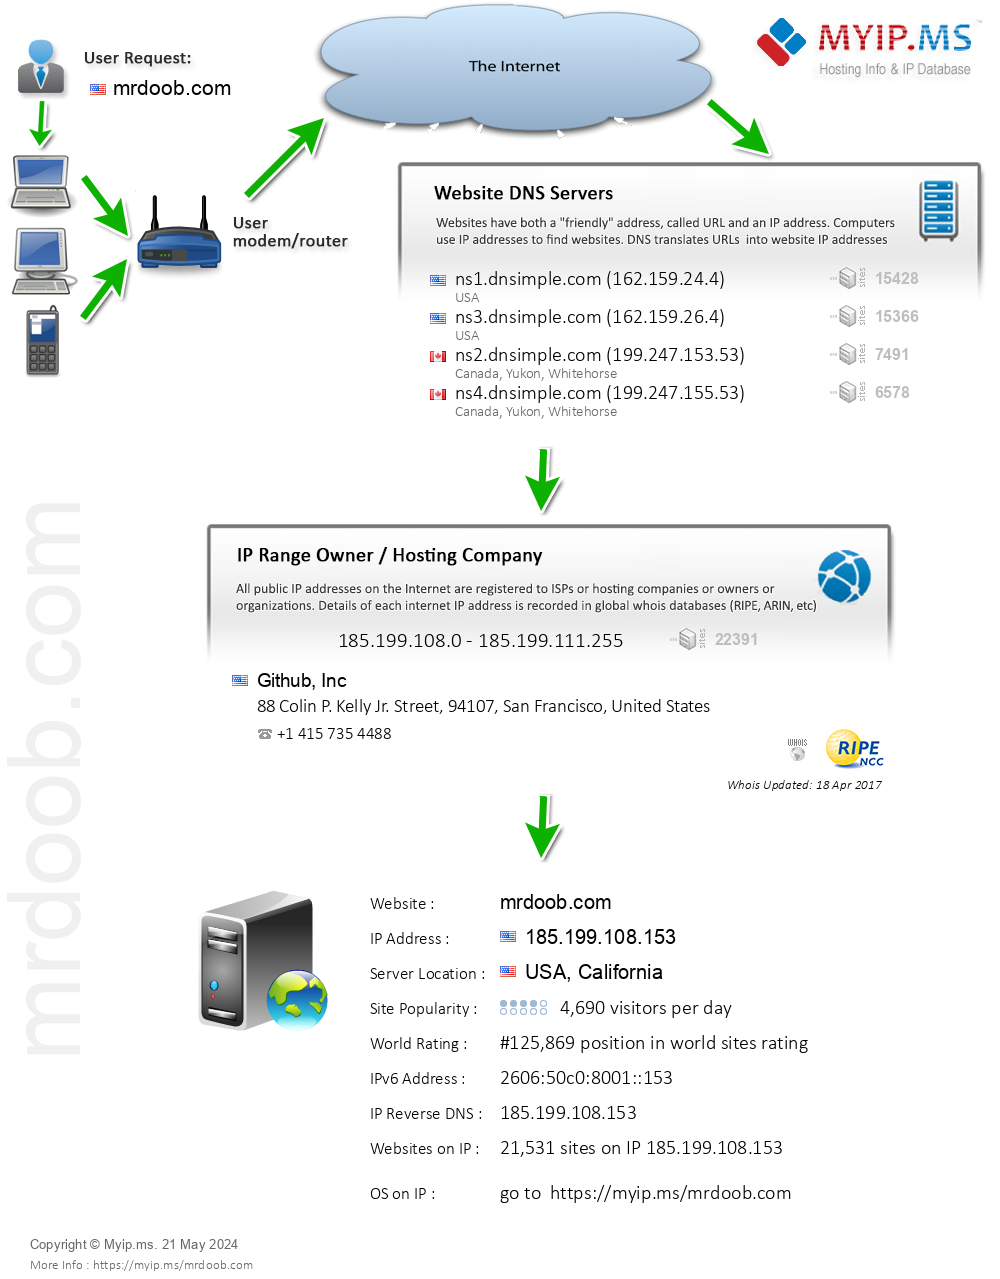 Mrdoob.com - Website Hosting Visual IP Diagram